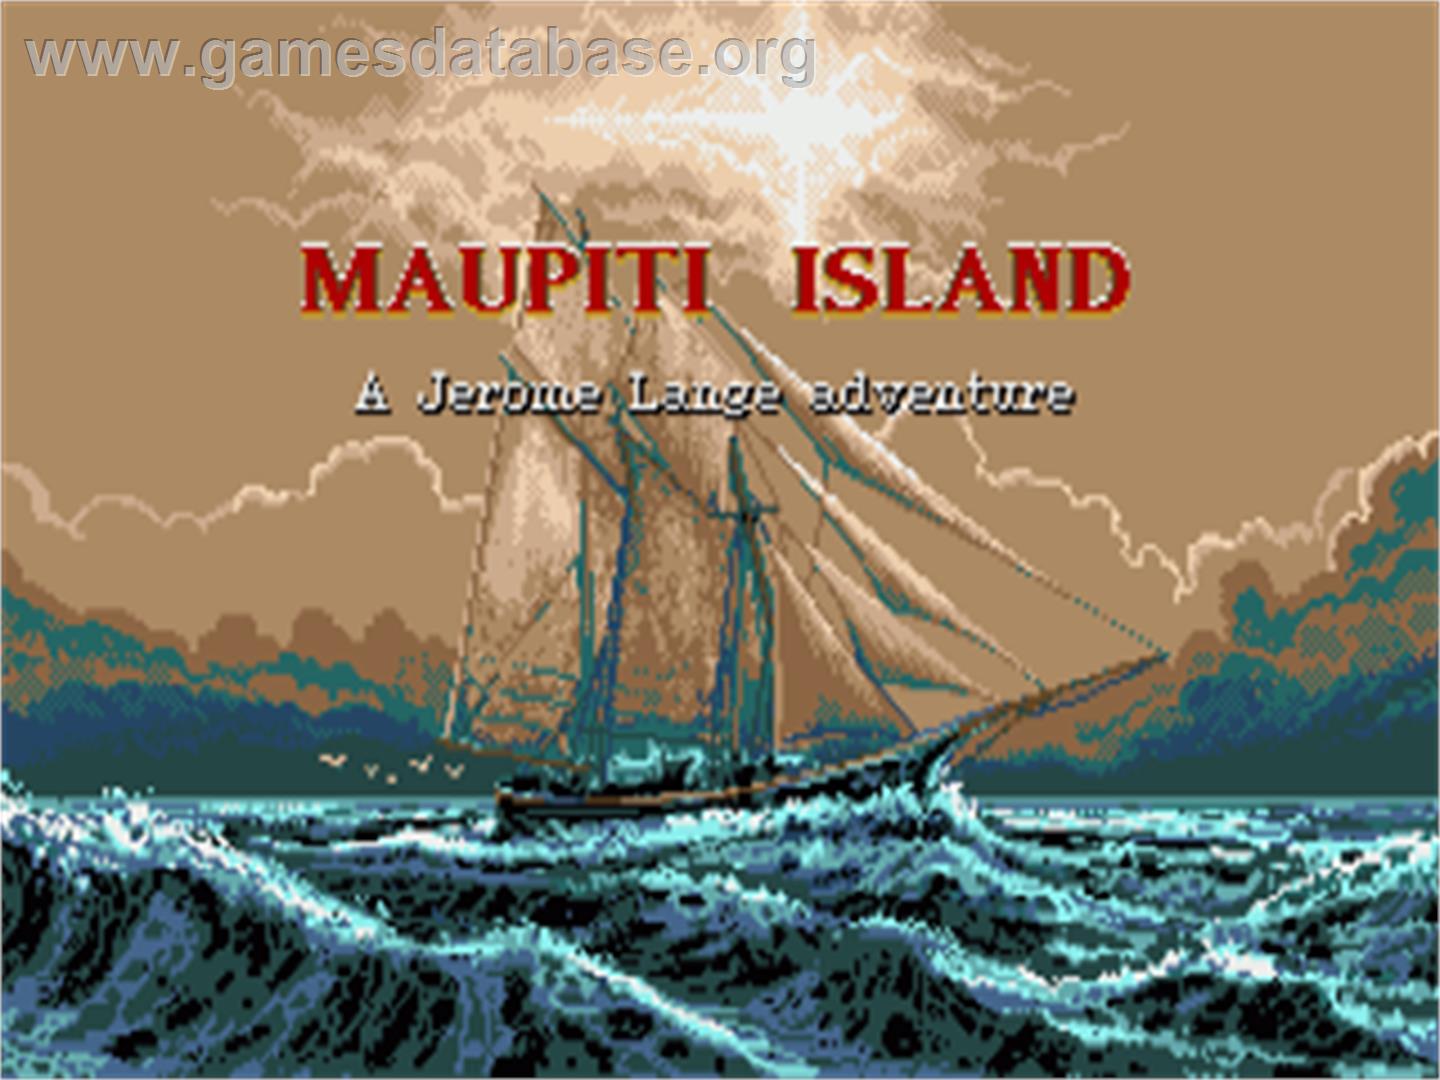 Maupiti Island - Commodore Amiga - Artwork - Title Screen